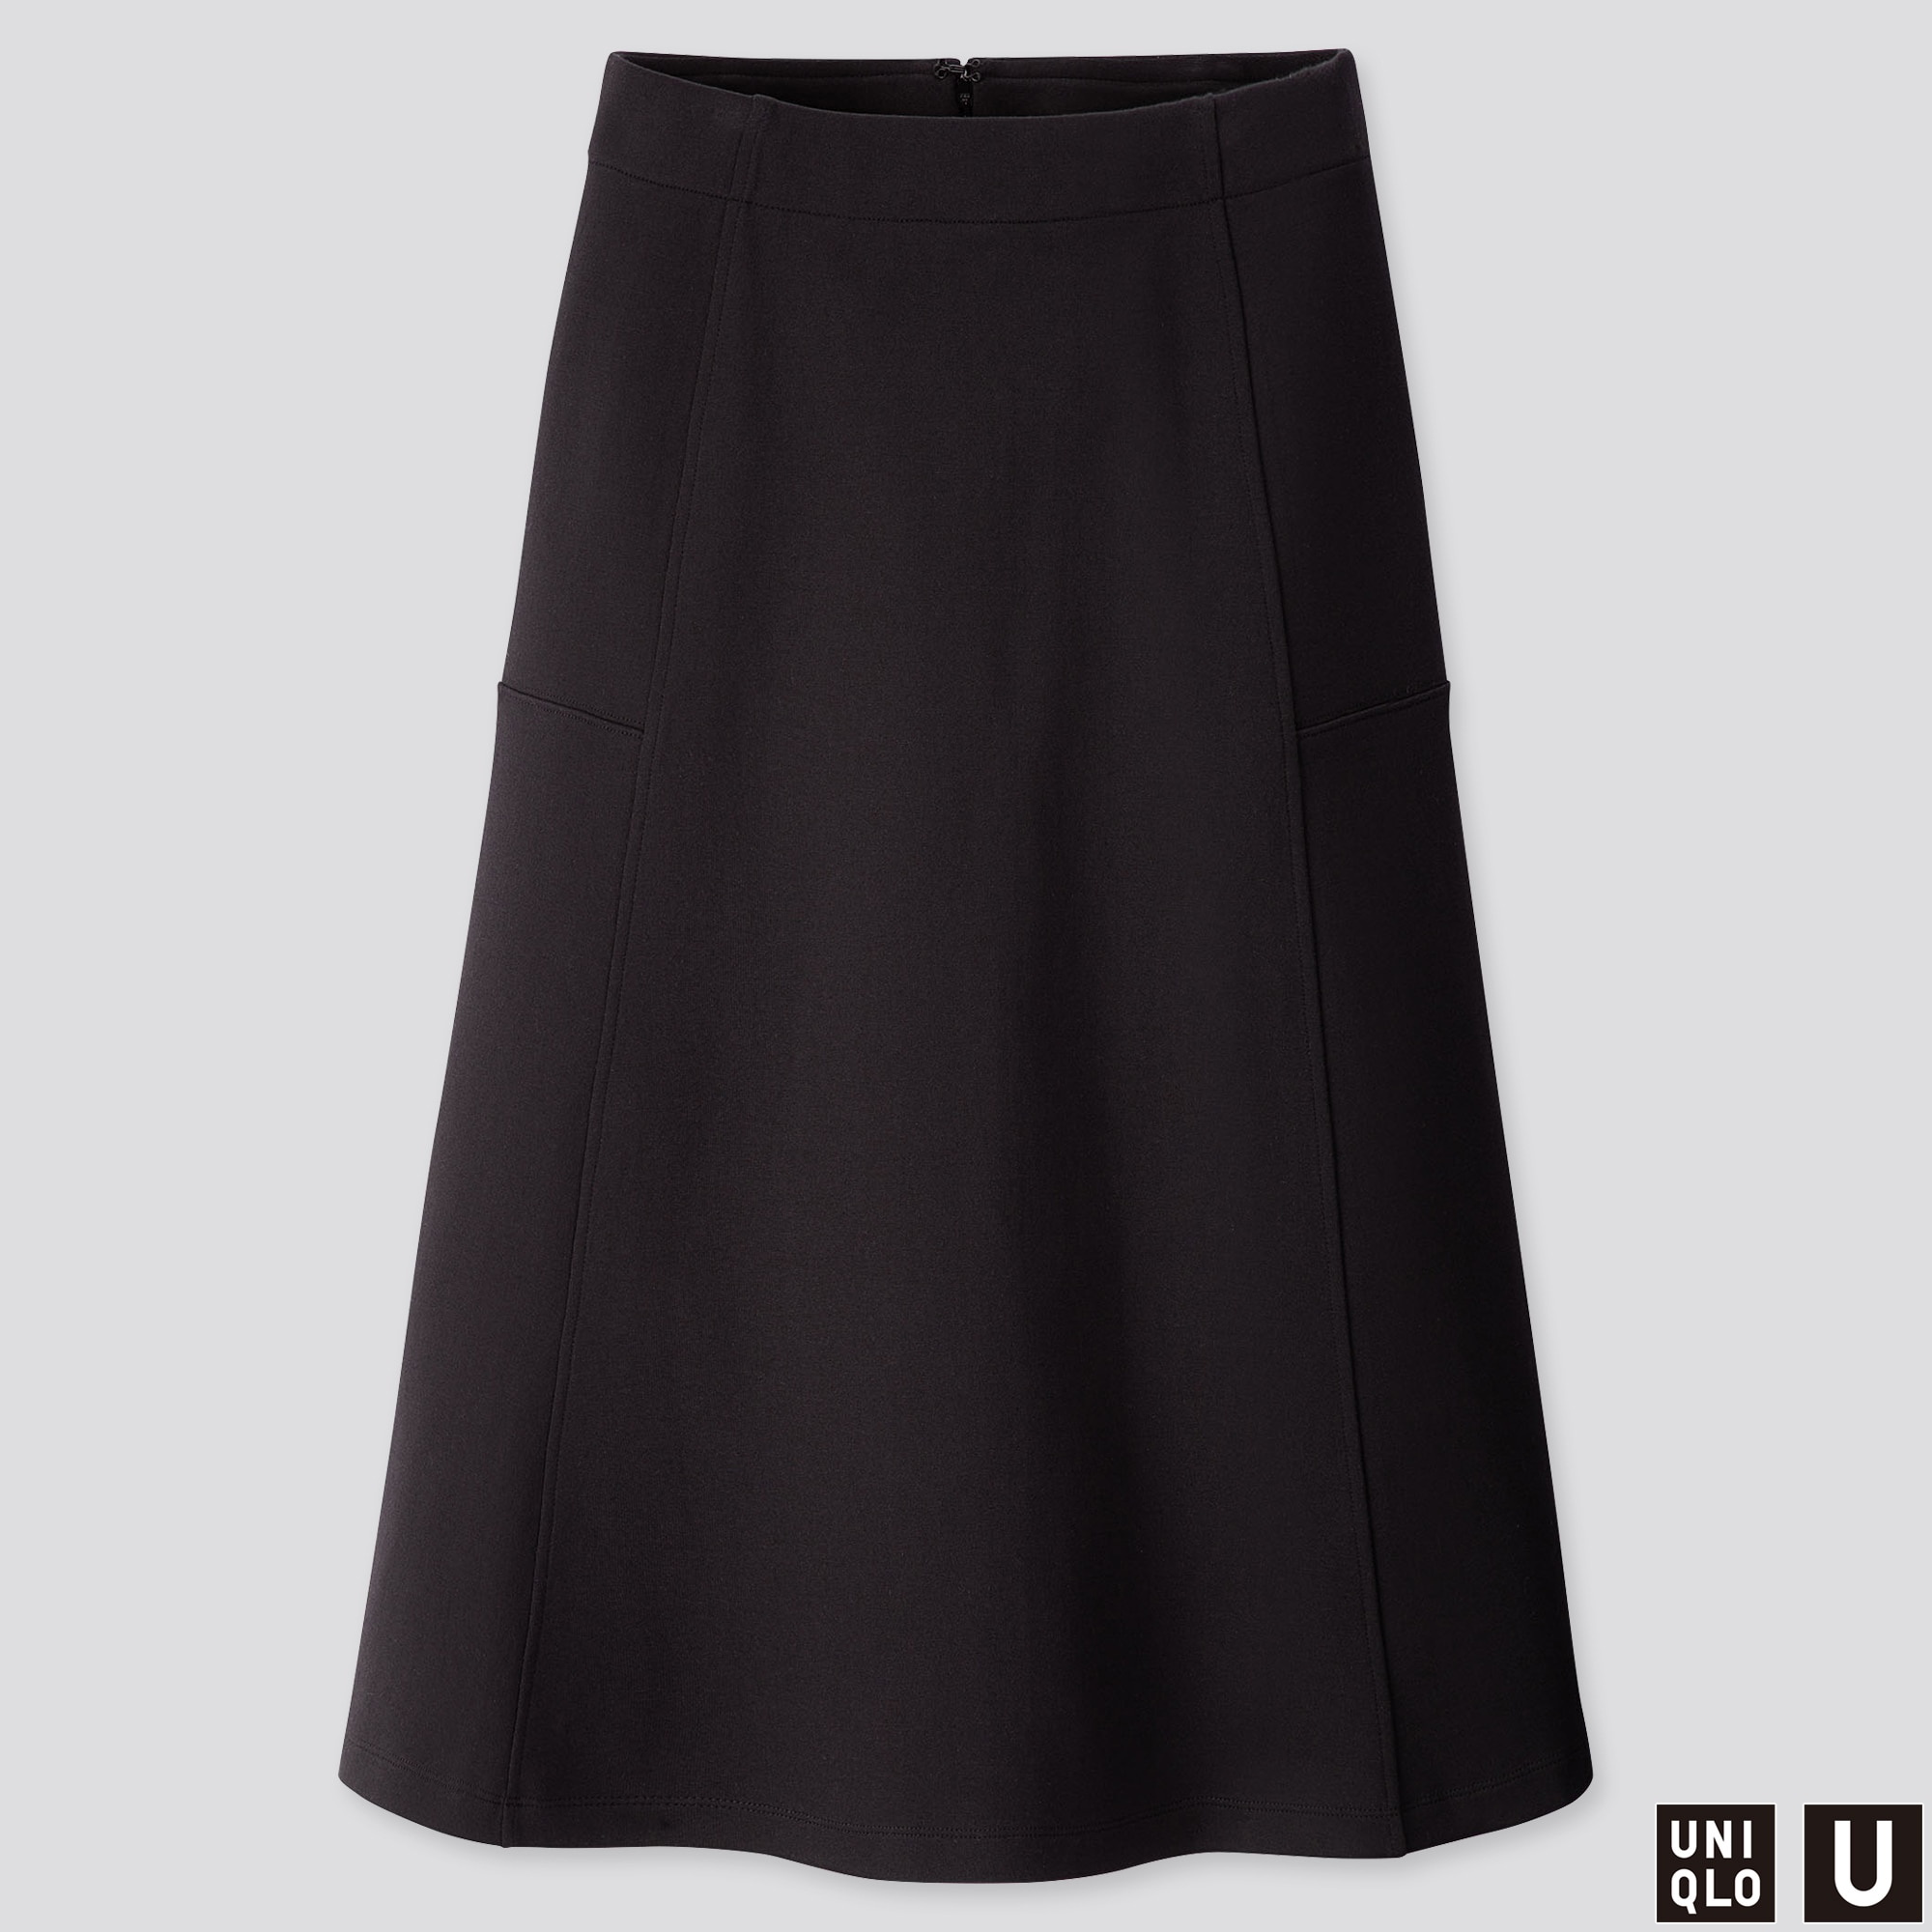 Uniqlo Skirt Size Chart